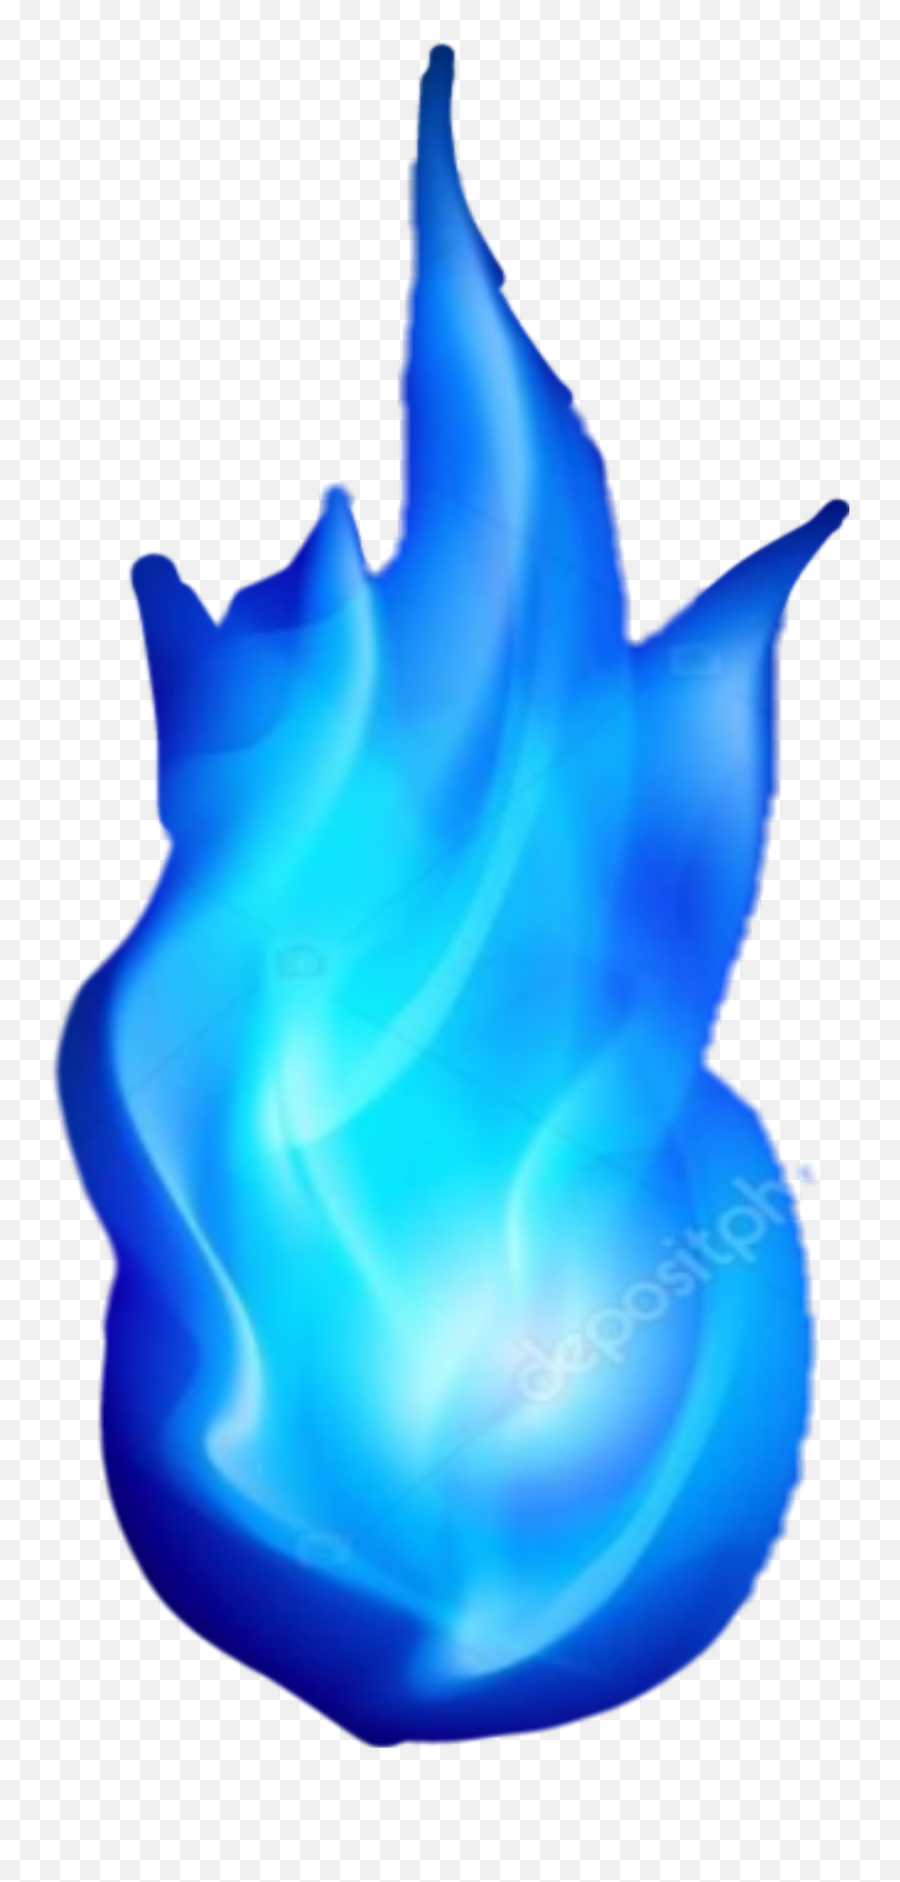 Fire - Cartoon Transparent Blue Fire Emoji,Fire Gif Transparent